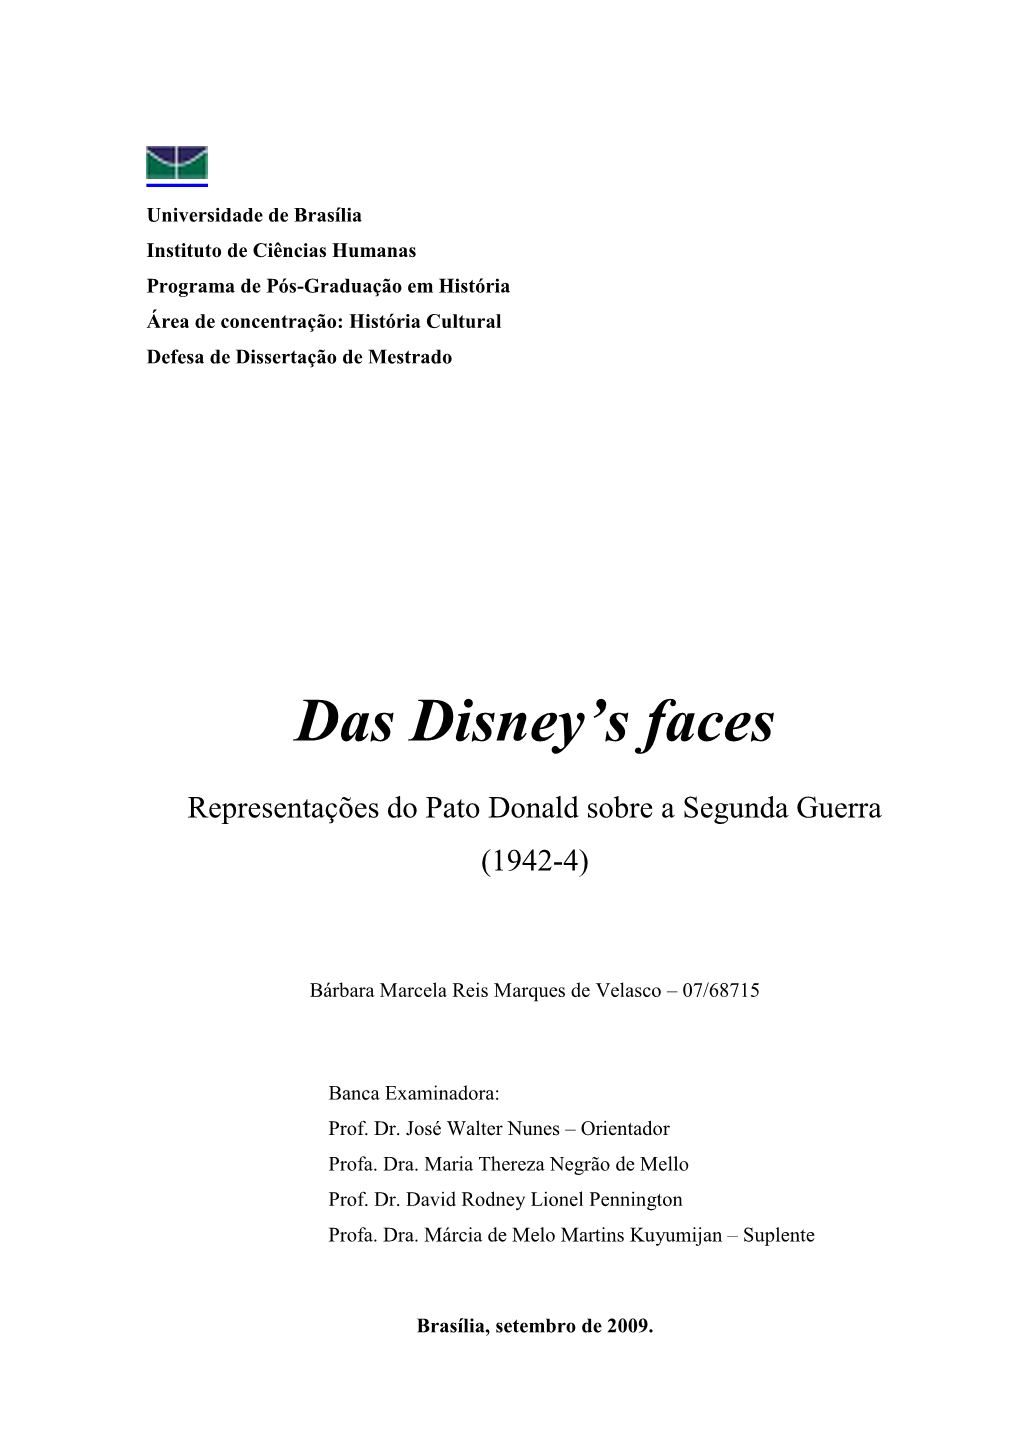 Das Disney's Faces